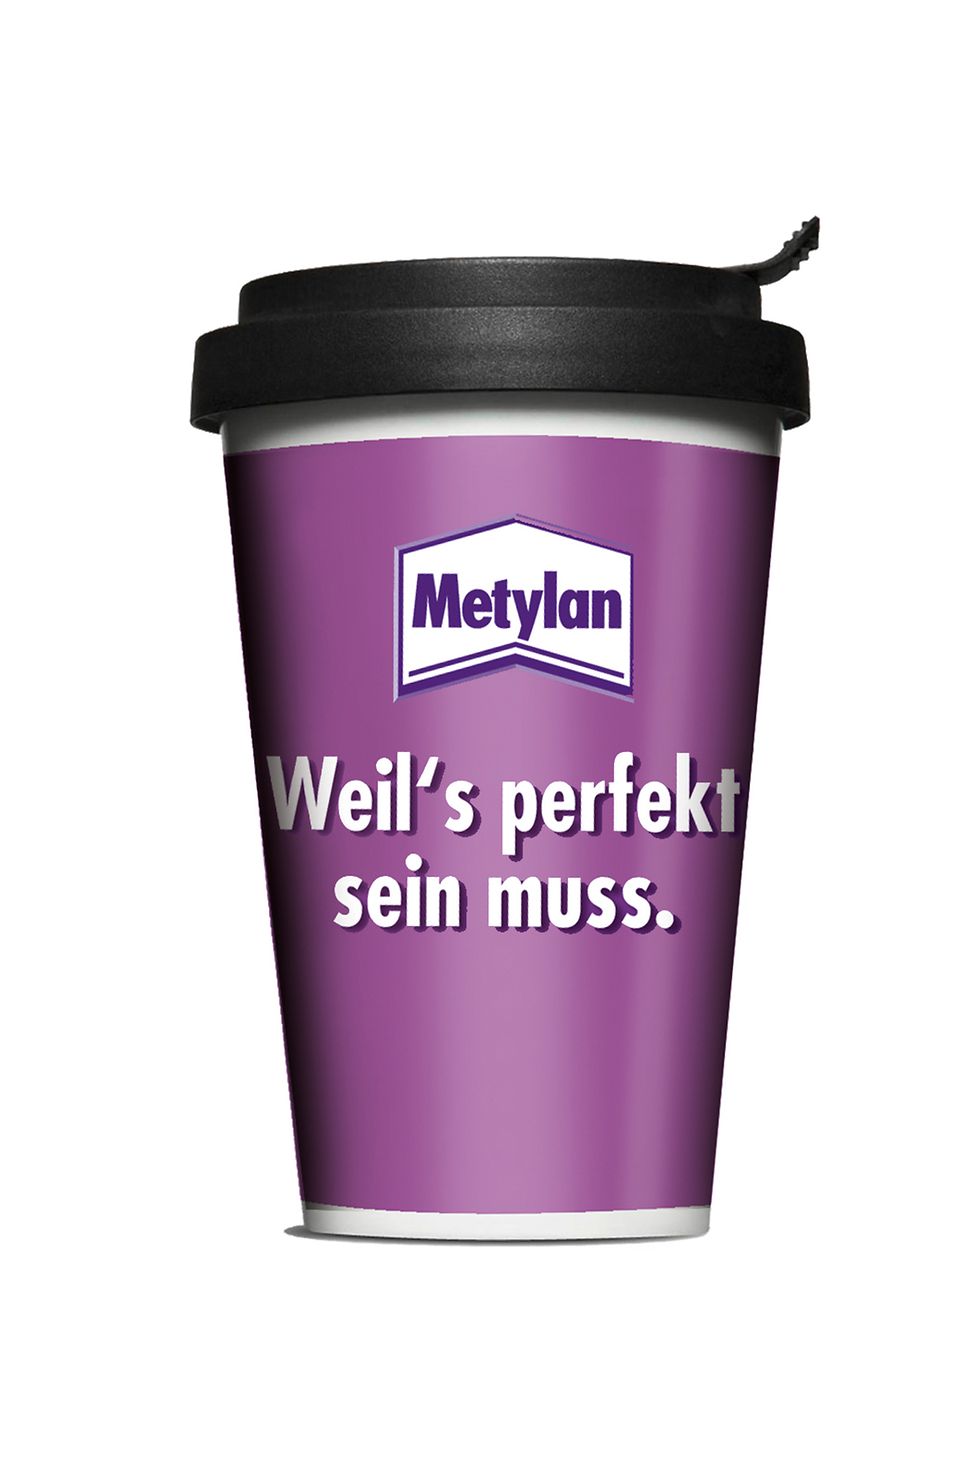 Metylan Coffee To Go-Becher 